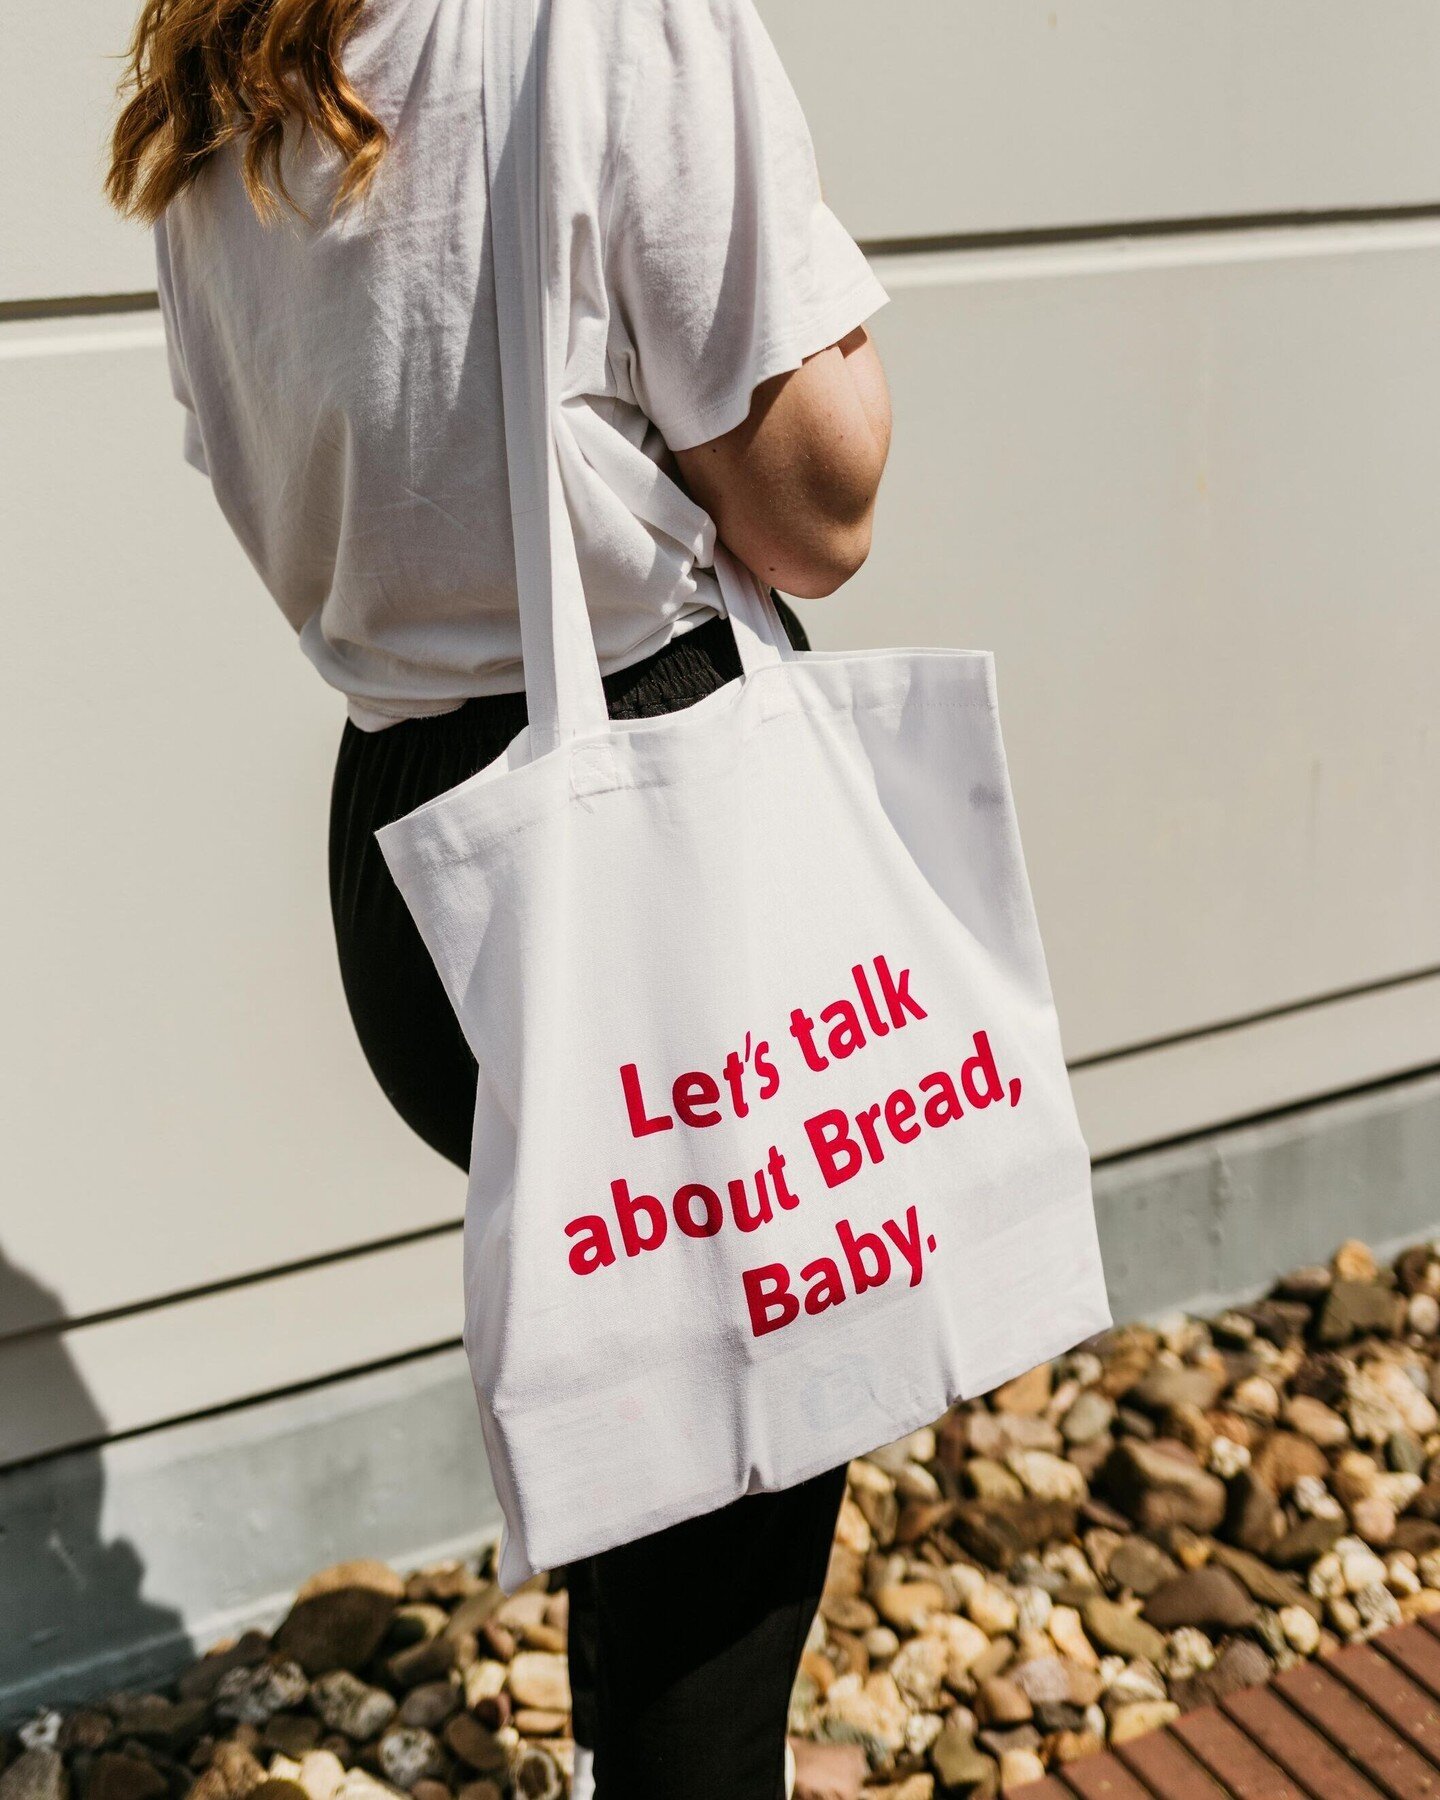 ❗ Einmal hin, alles drin ❗Zu jeder Bestellung in unserem Online-Shop gibt's jetzt einen Let's talk about Bread, Baby - Beutel gratis dazu. Link in der Bio 🛍️